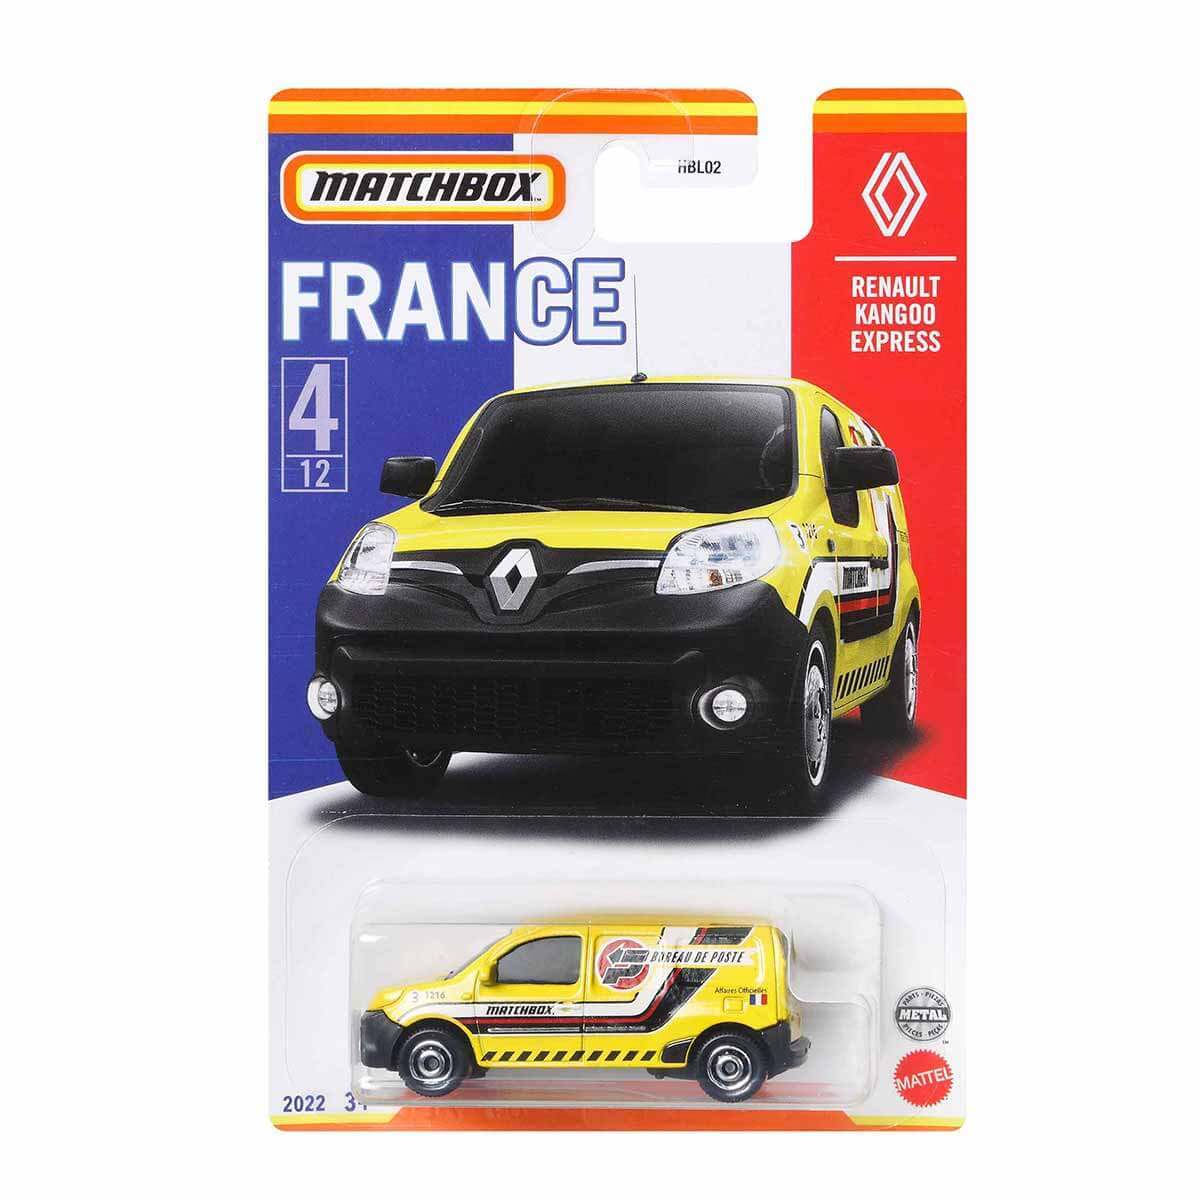 MATCHBOX Fransa Araçları Serisi HBL02 - Renault Kango Express